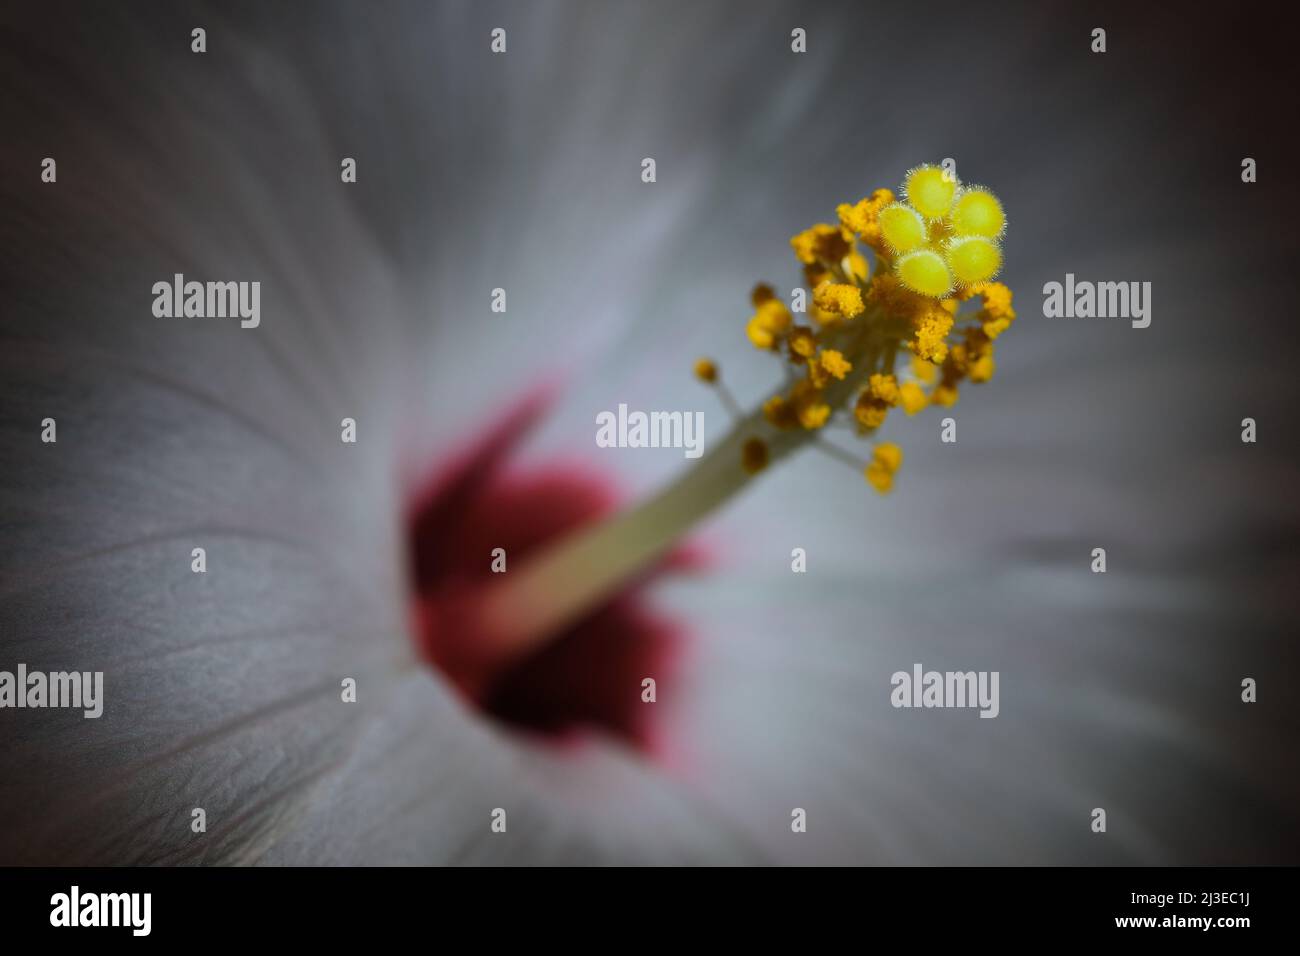 Un primo piano estremo di un Hibiscus bianco -Hibiscus sinensis- fiori stigma, pistil e stamen in un'illuminazione soffusa e scura; catturato in uno Studio Foto Stock